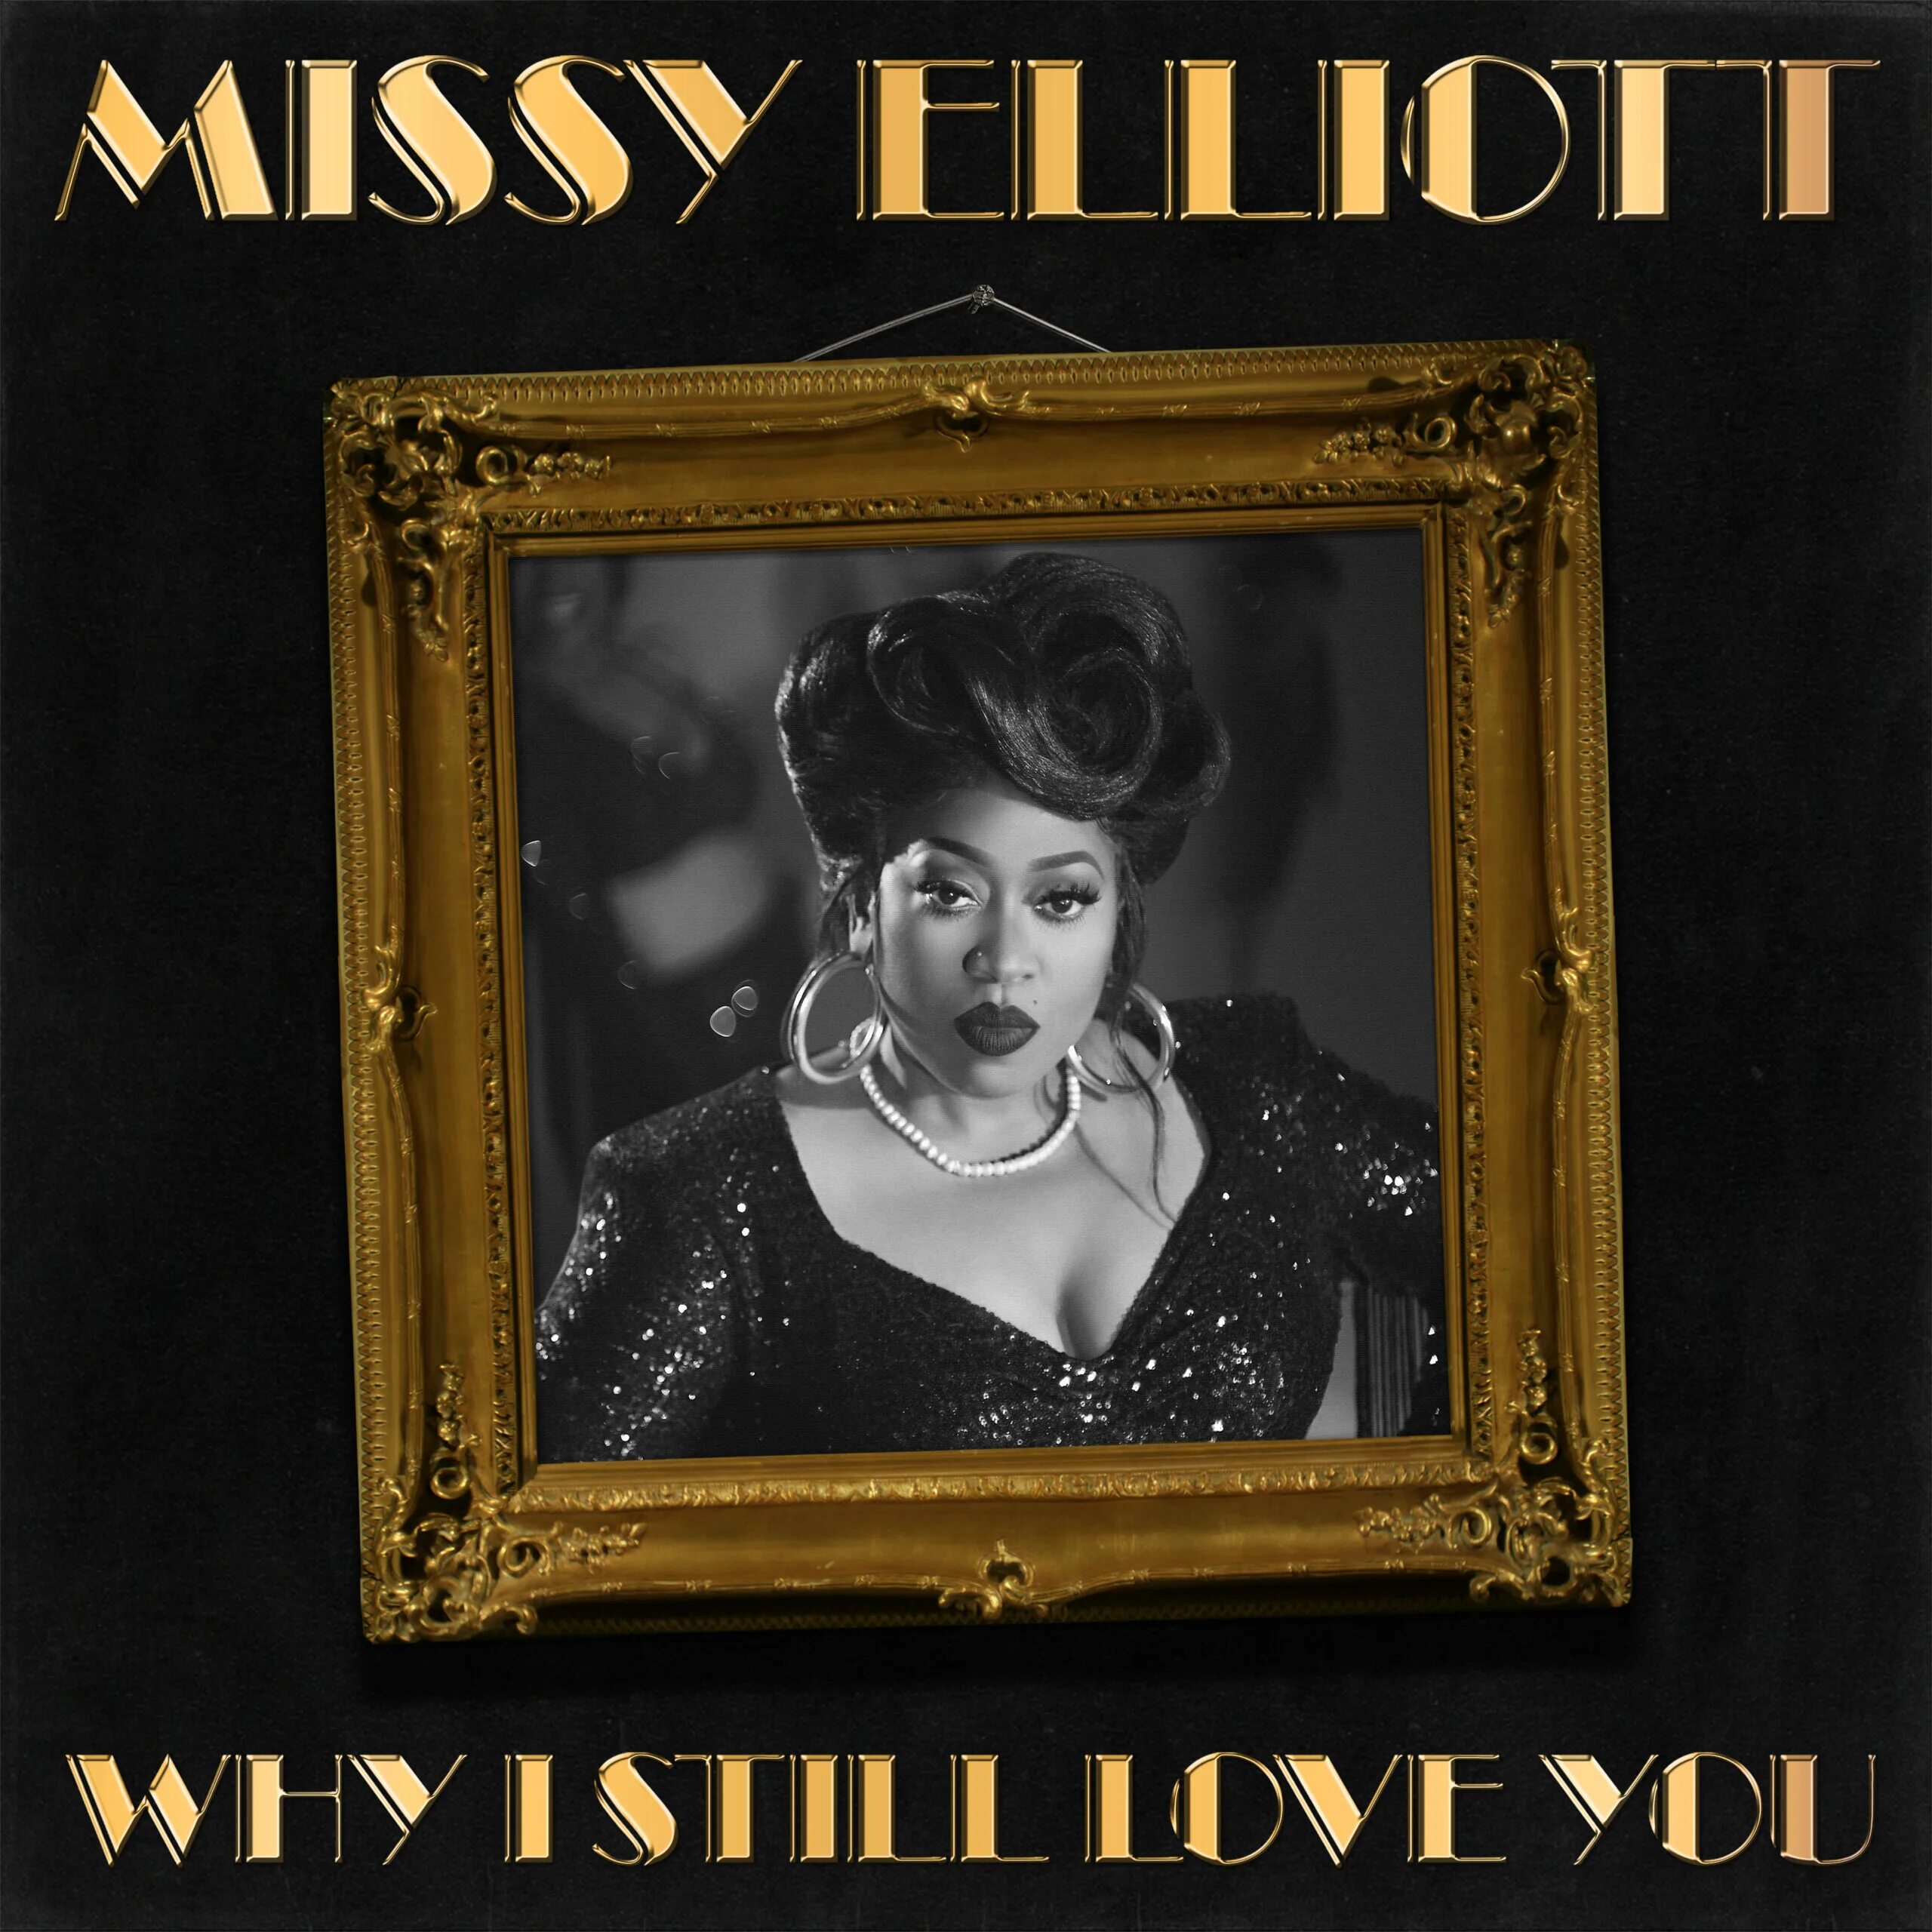 Missy Elliott under Construction альбомы. I still Love you.